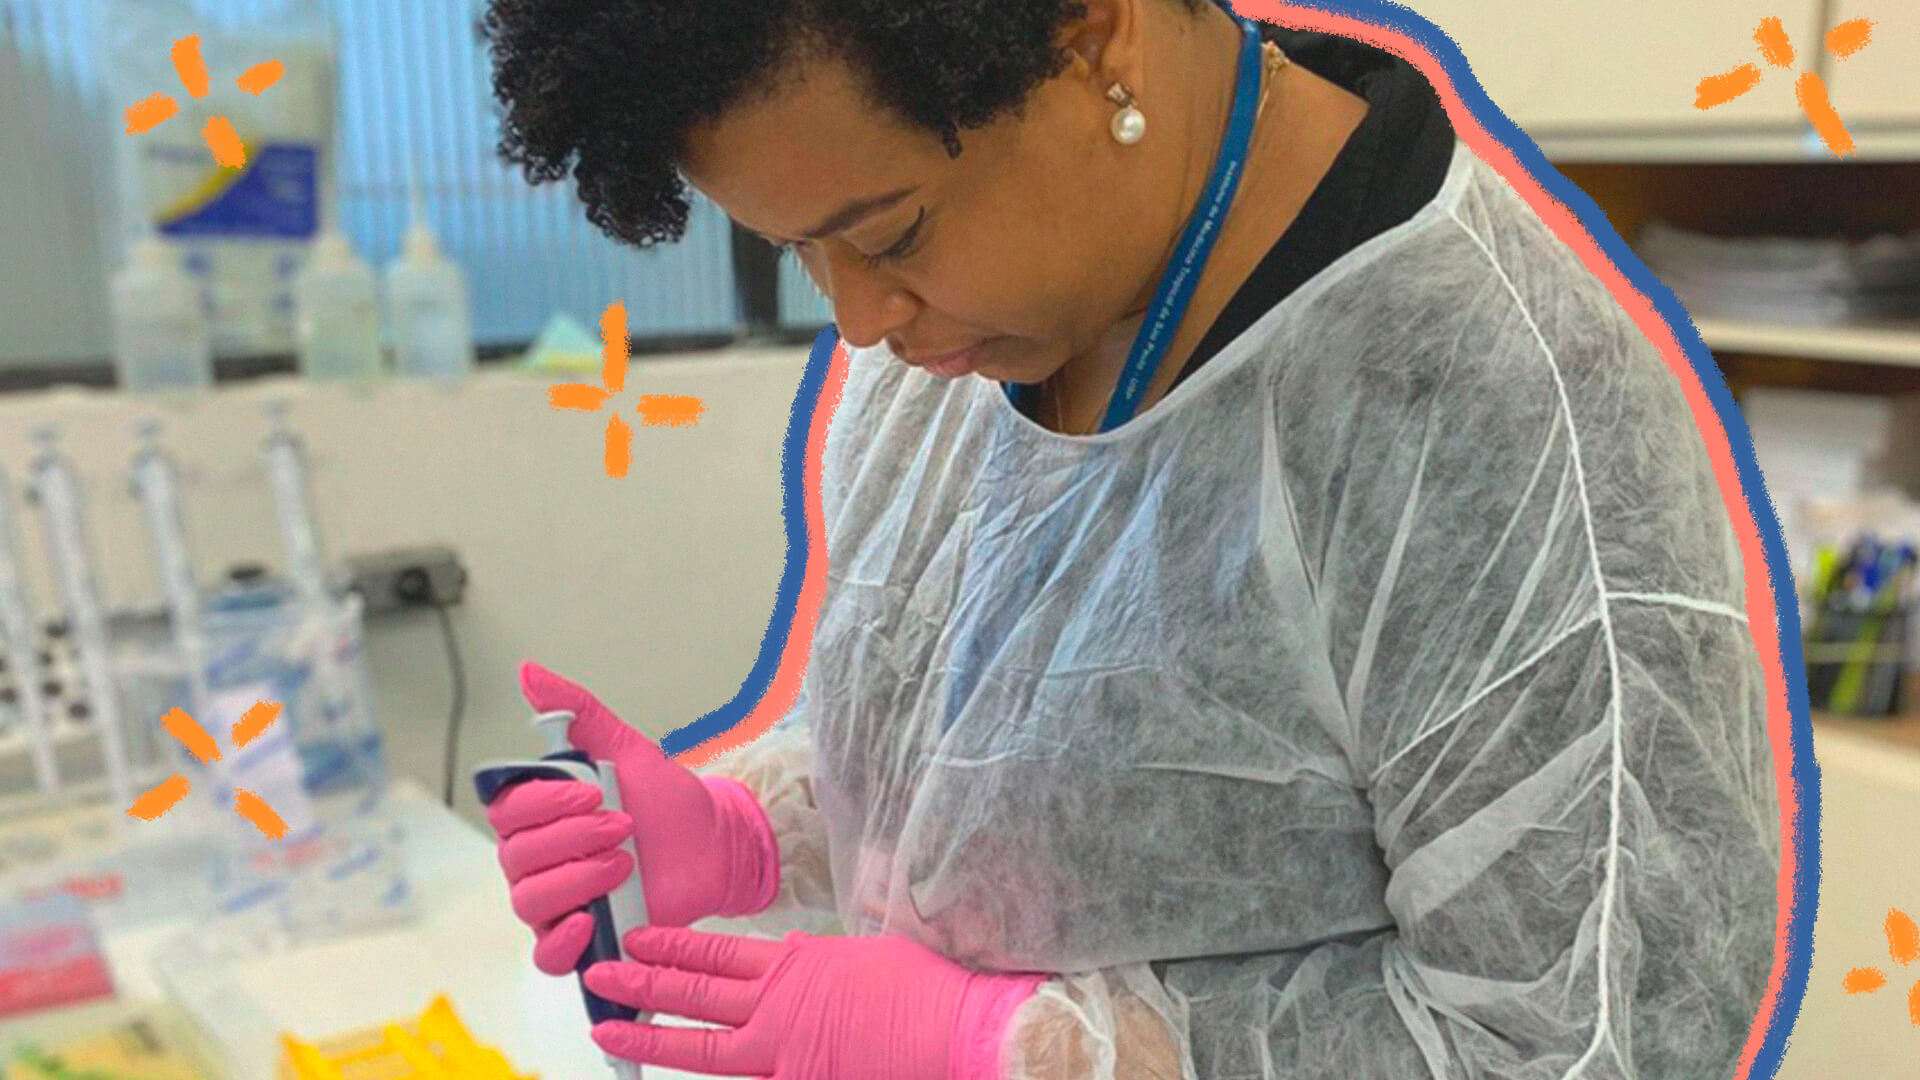 Foto de Jaqueline Goes, uma cientista negra brasileira. Ela está num laboratório, usa roupa e luvas de proteção, enquanto manipula testes clínicos.